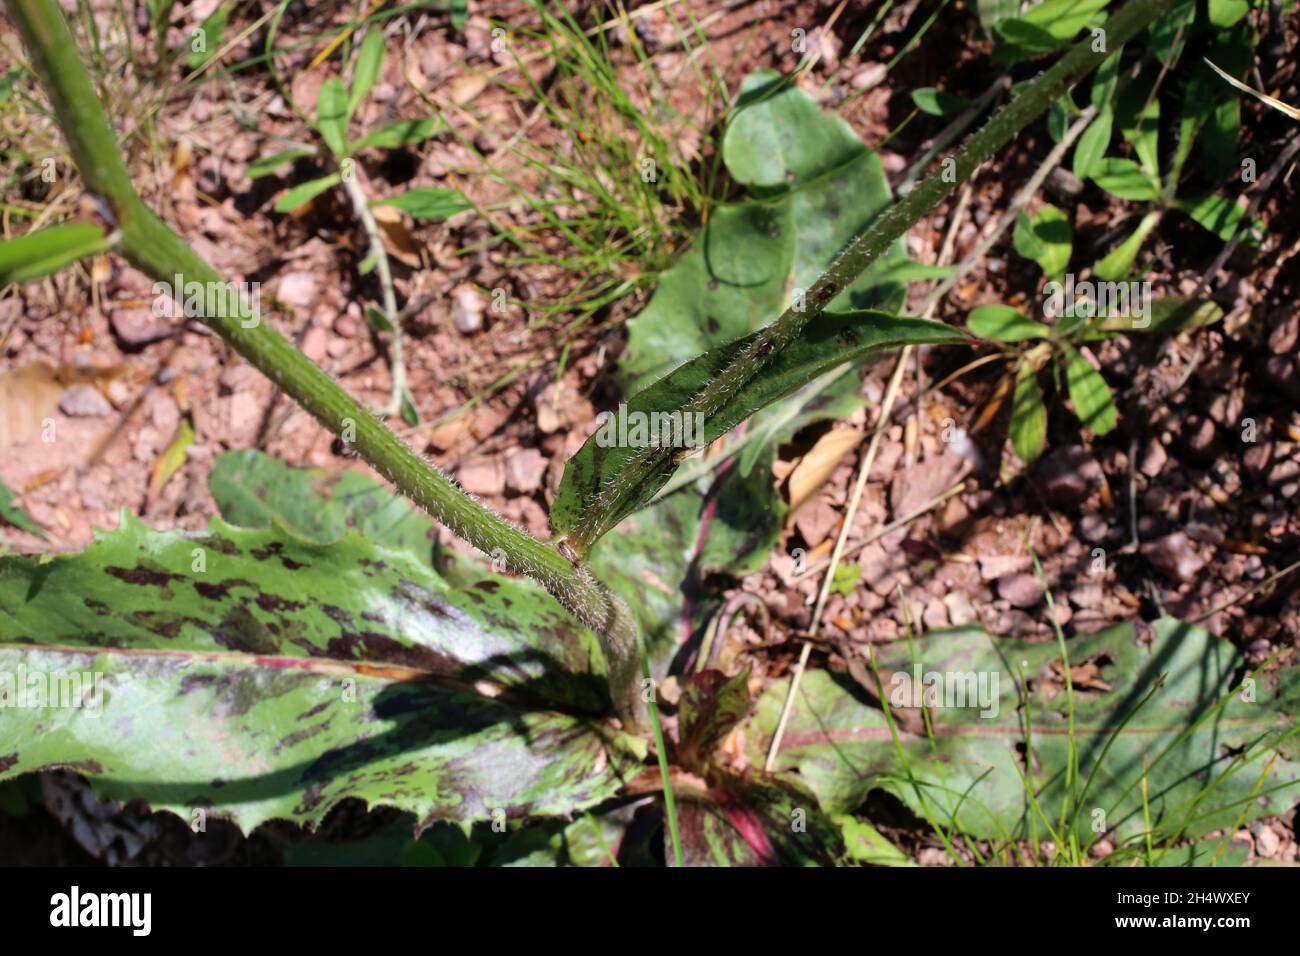 Hypochaeris maculata, Compositae. Wild plant shot in summer. Stock Photo